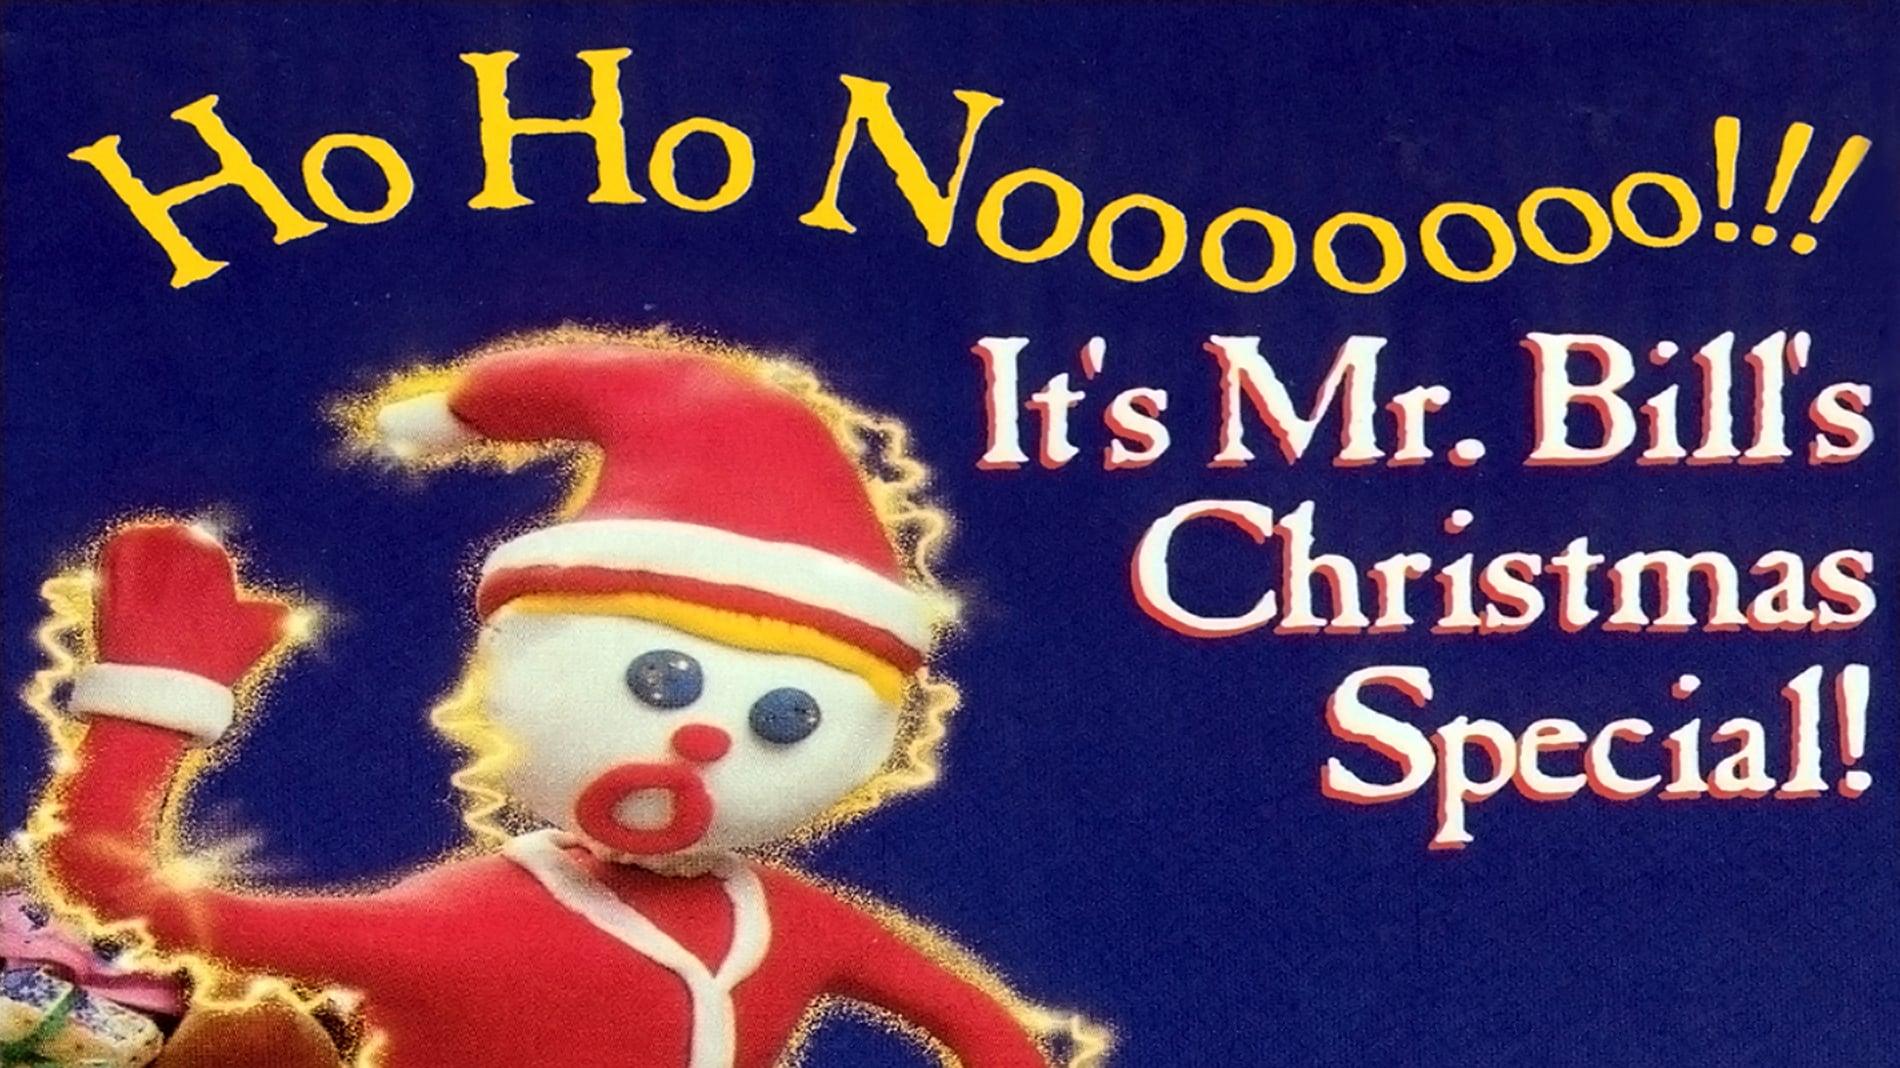 Ho Ho Nooooooo!!! It's Mr. Bill's Christmas Special! backdrop